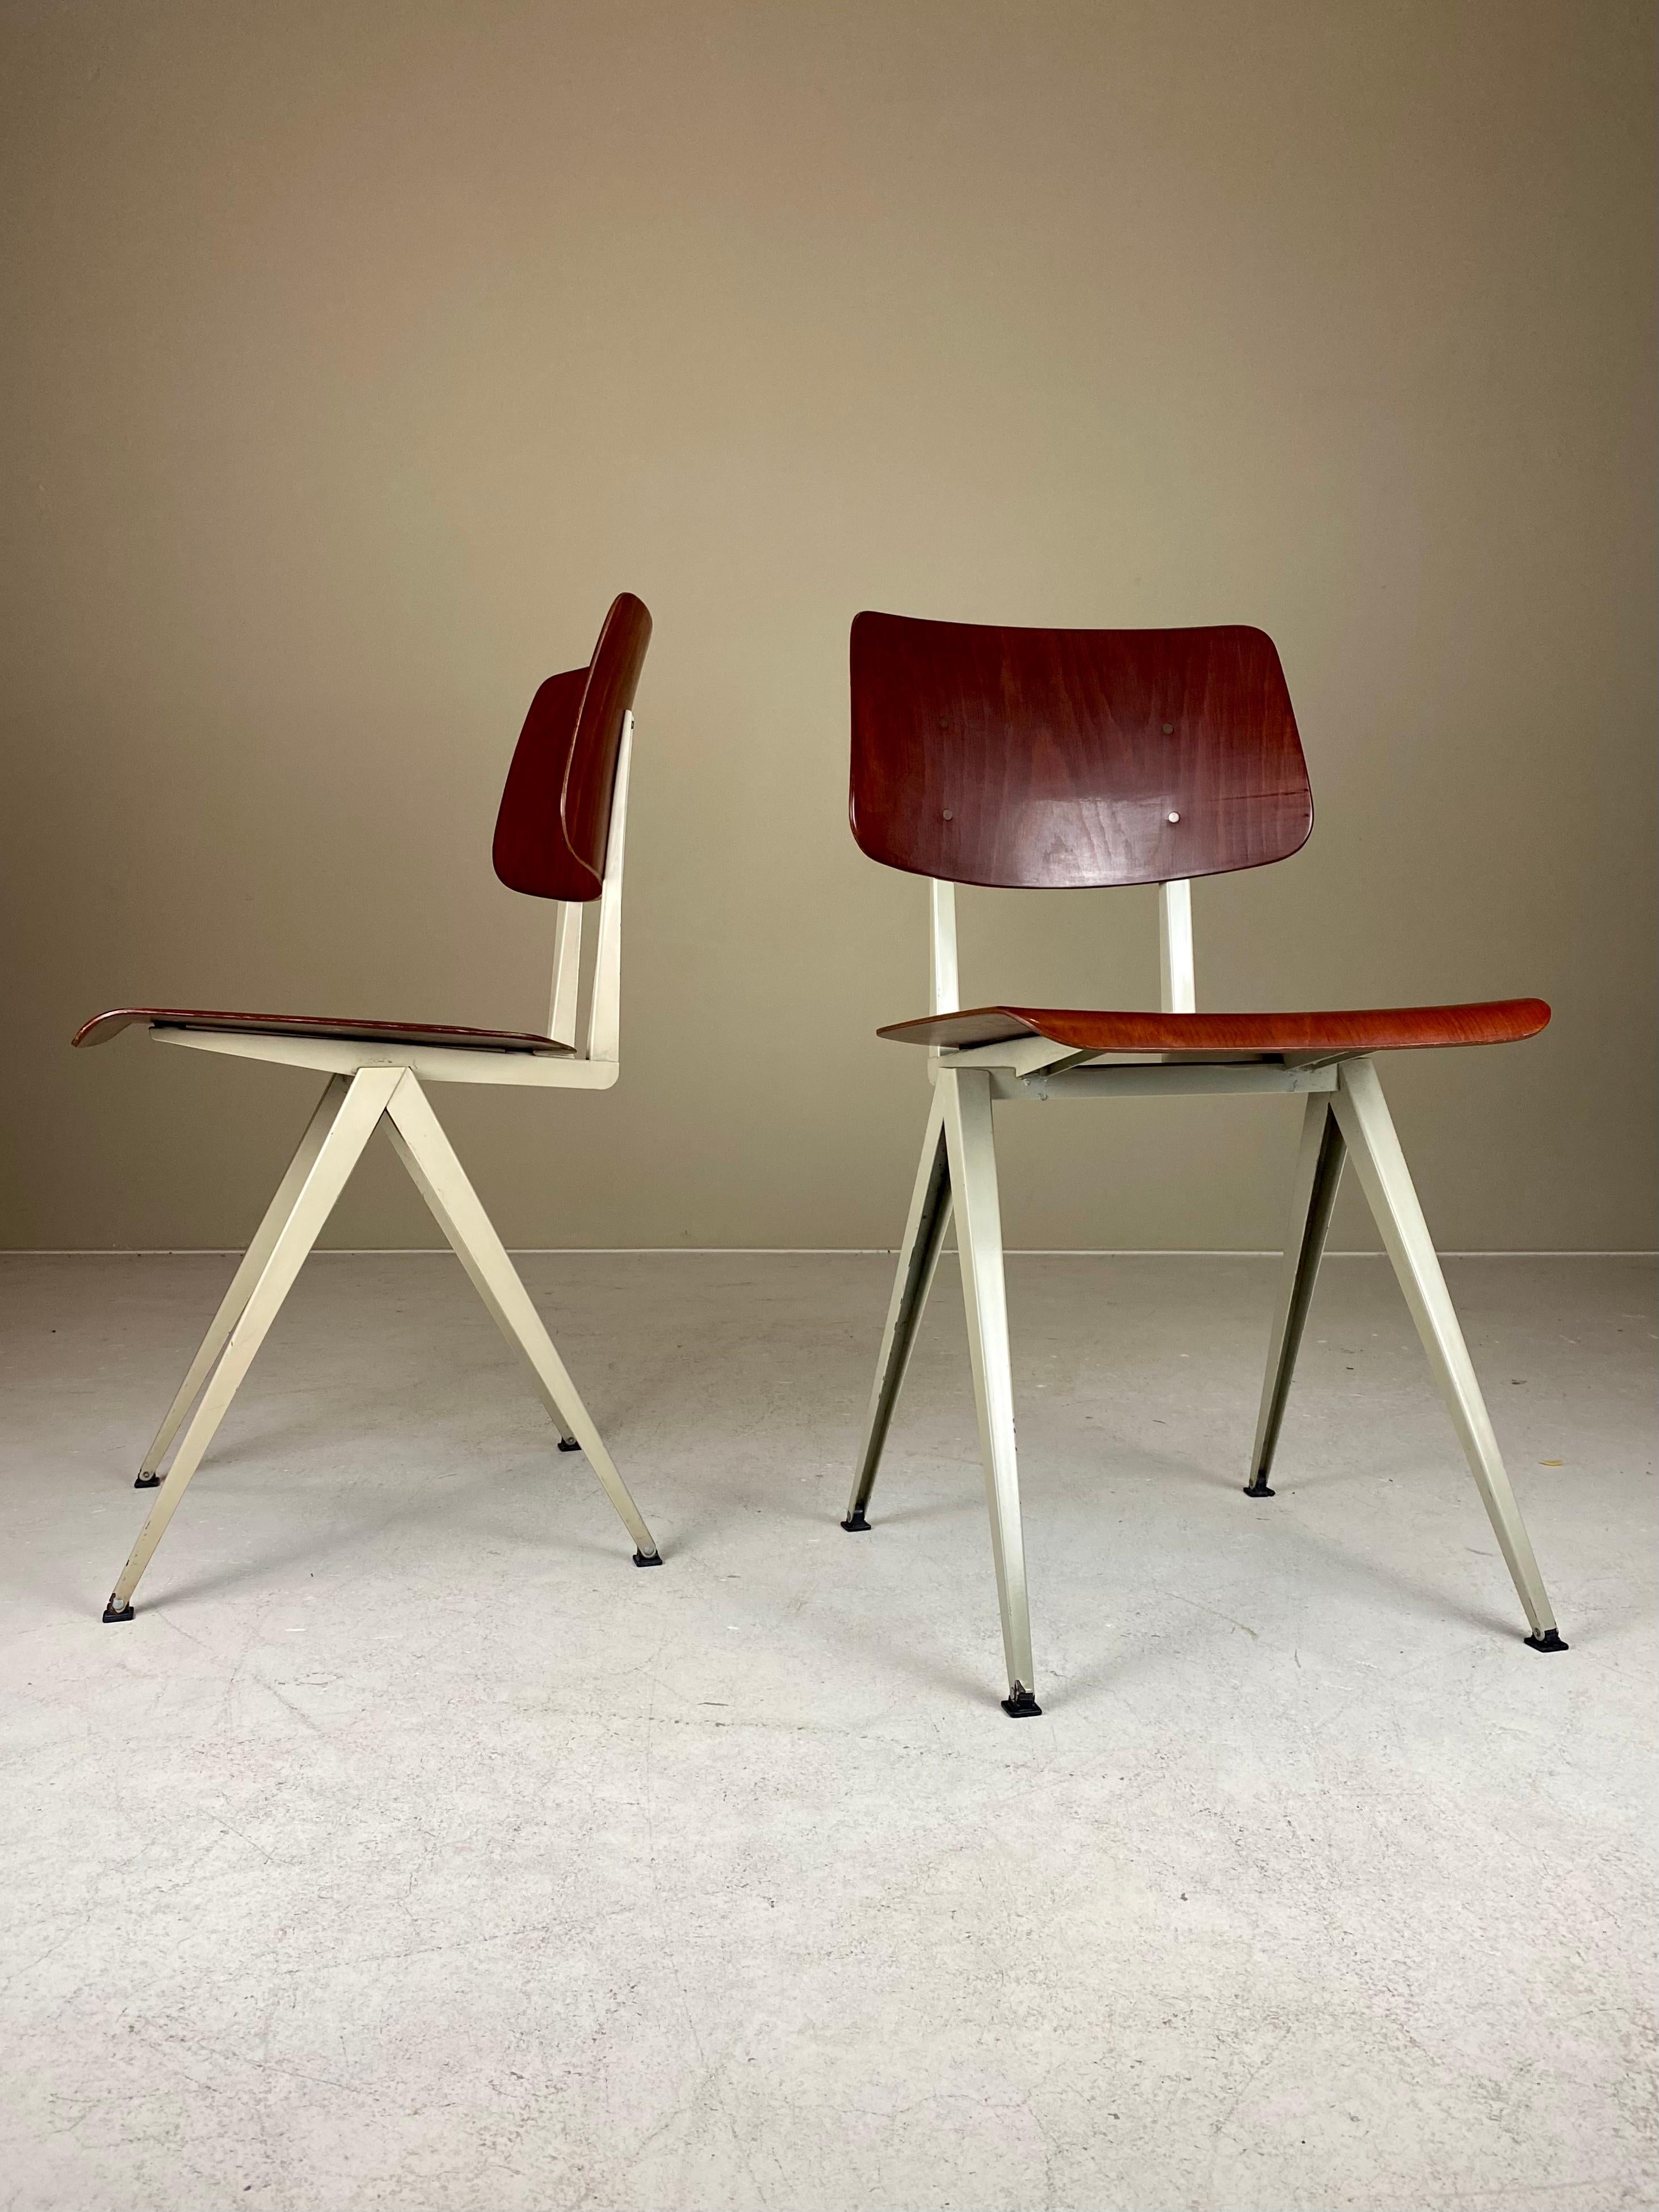 Zum Verkauf steht ein schöner Satz von vier Galvanitas S16 Compass Chairs, der wohl kultigste Schulstuhl, der je produziert wurde. Der erste, der mit Blech designte, war natürlich Jean Prouve, aber in den Niederlanden explodierten die Experimente